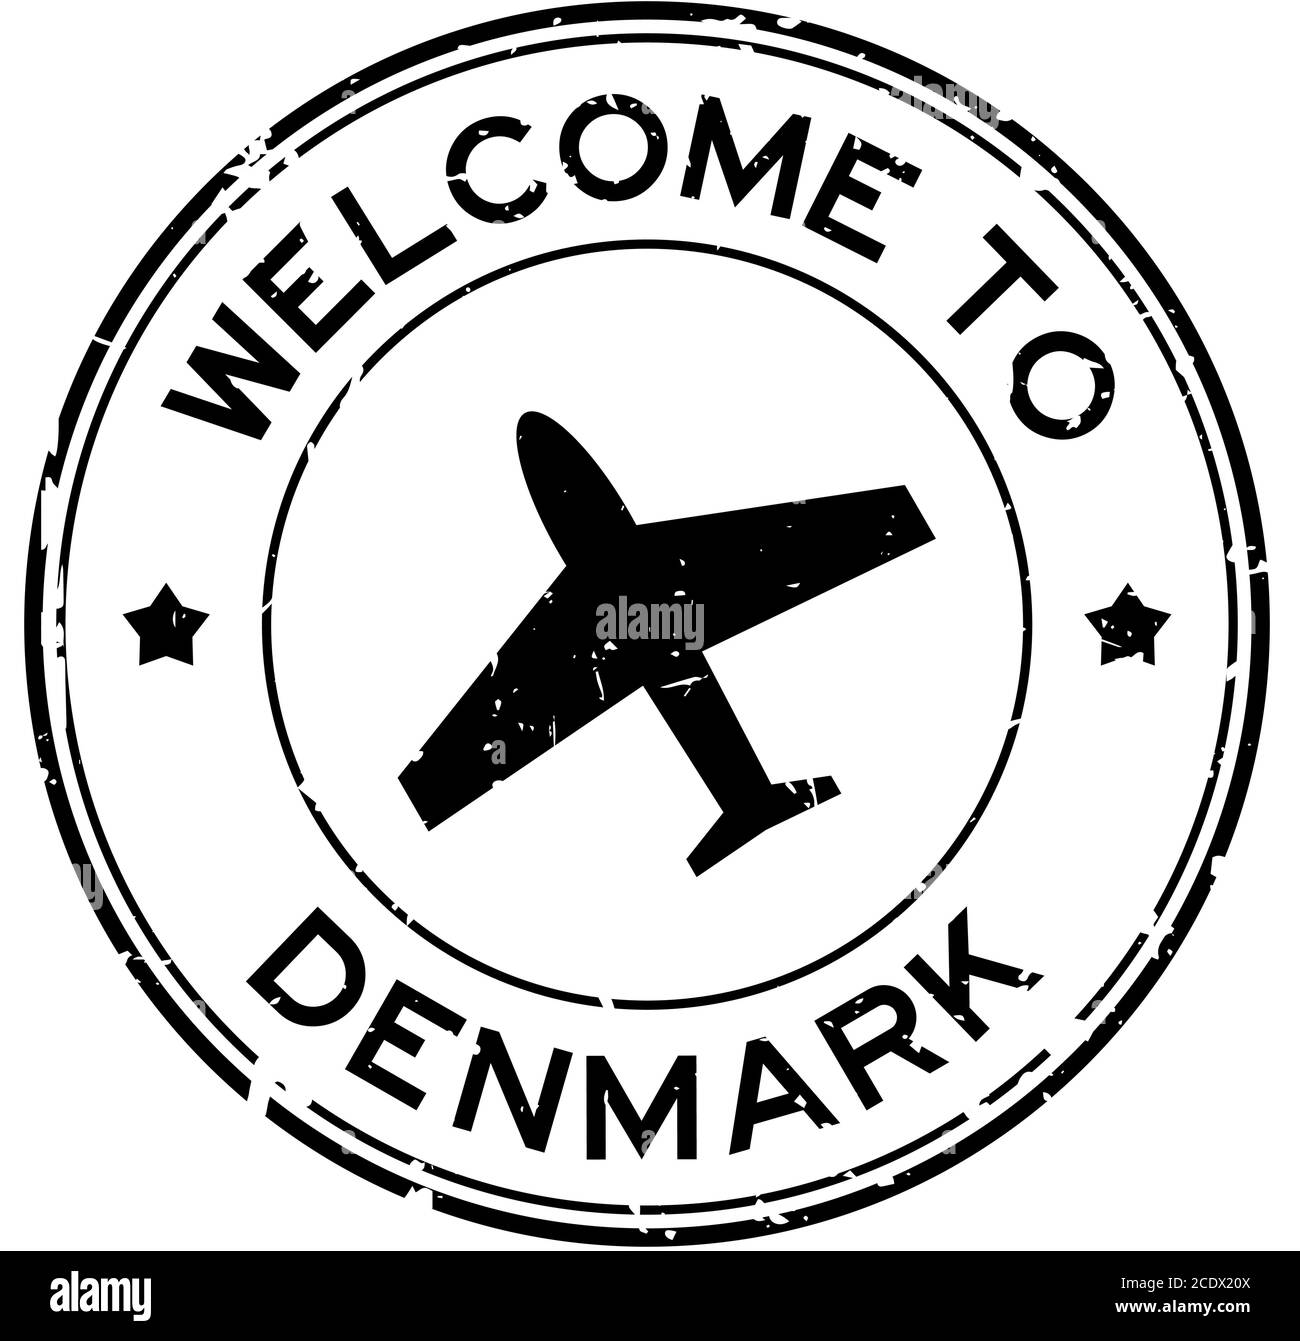 Grunge schwarz Willkommen in Dänemark Wort mit Flugzeug-Symbol rund Stempel mit Gummidichtung auf weißem Hintergrund Stock Vektor